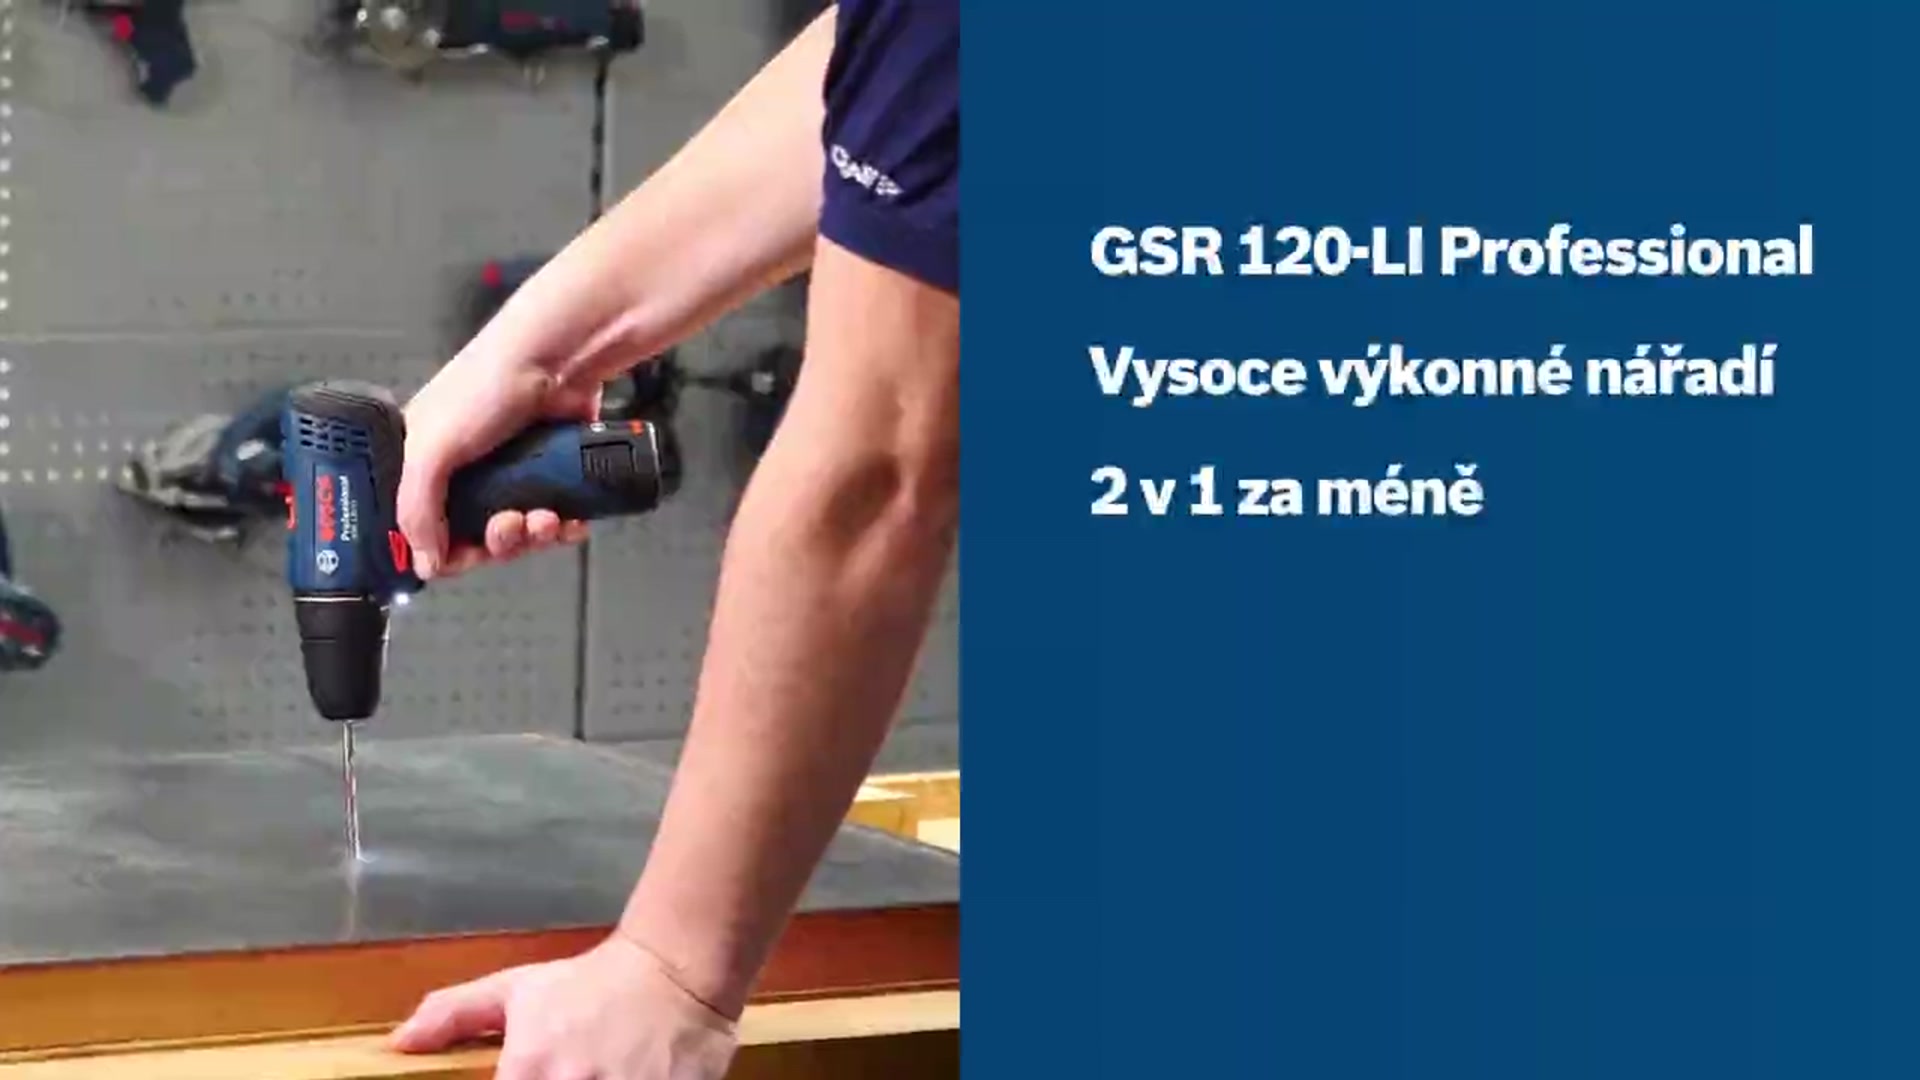 GSR 120-LI